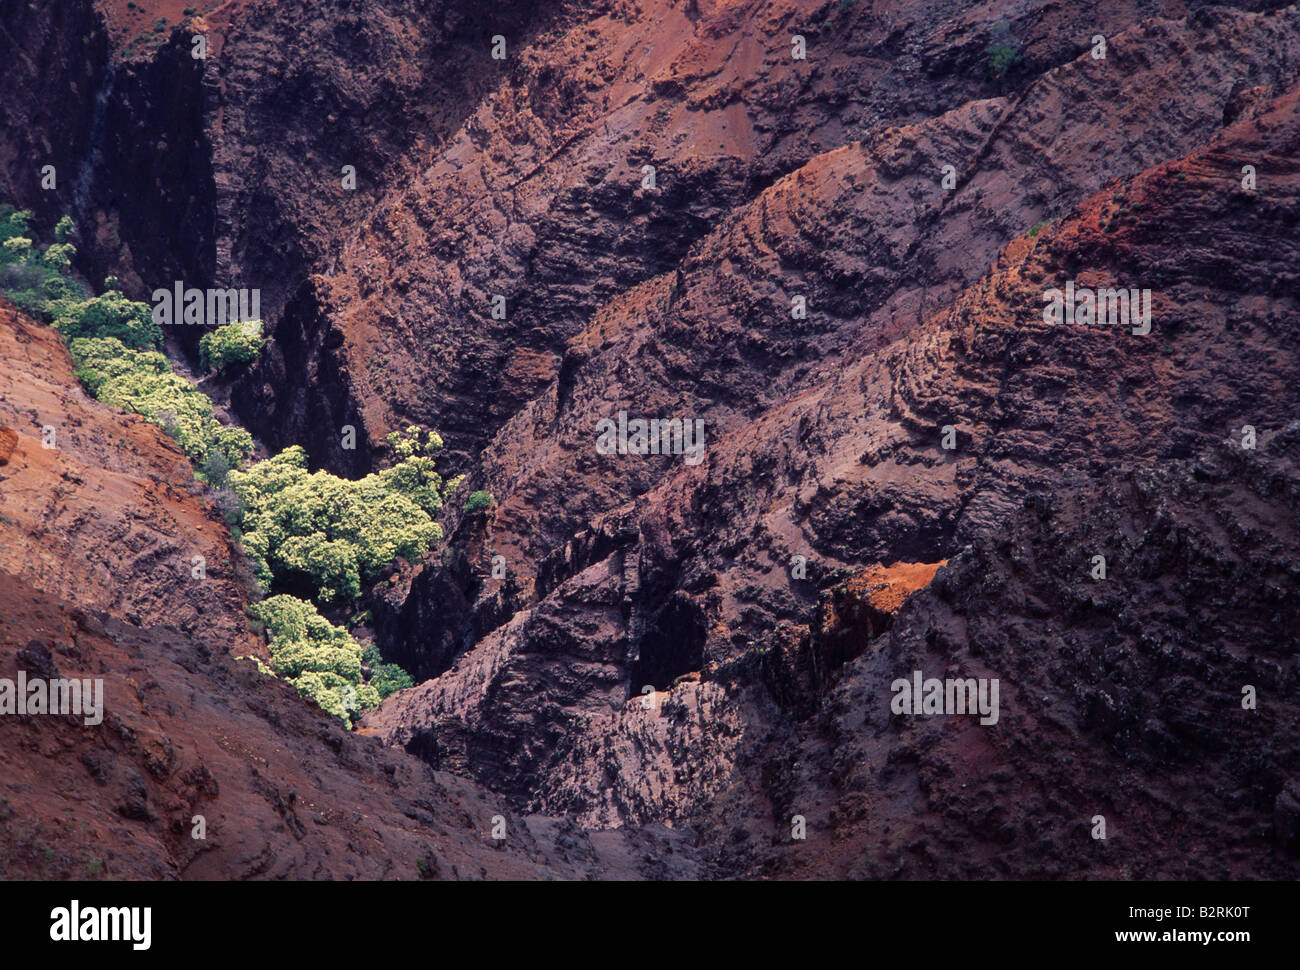 El Cañón de Waimea mostrando capas de basalto volcánico erosionado desde hace millones de años, Kauai Hawaii Foto de stock